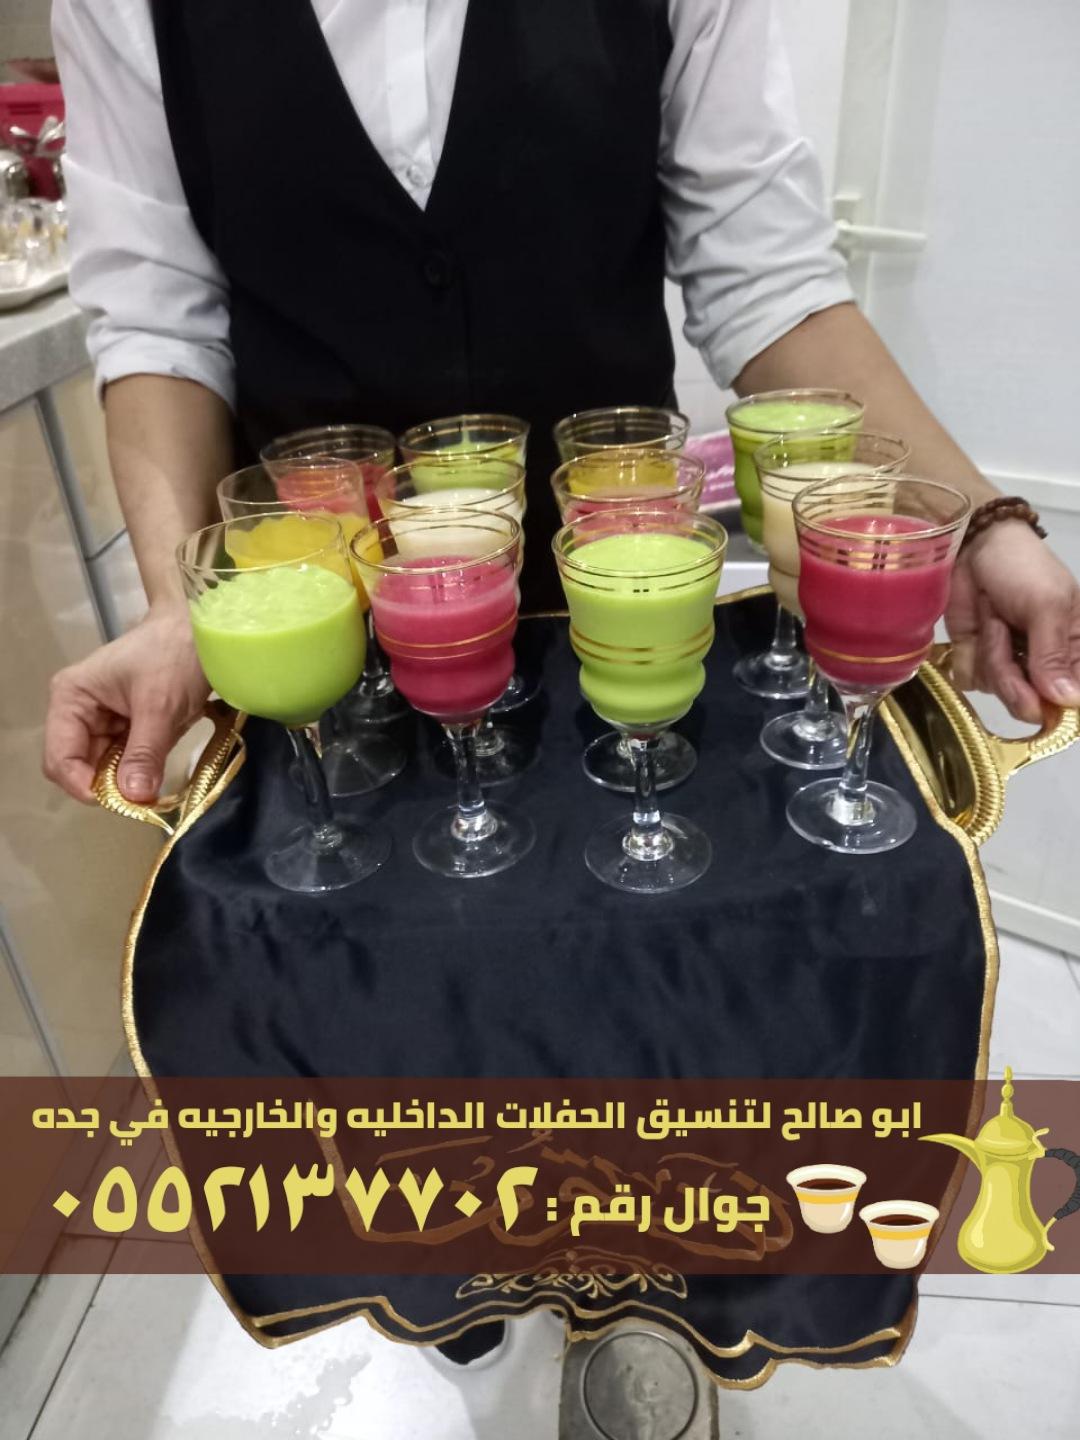 صبابين قهوه قهوجيات في جدة,0552137702 181678929